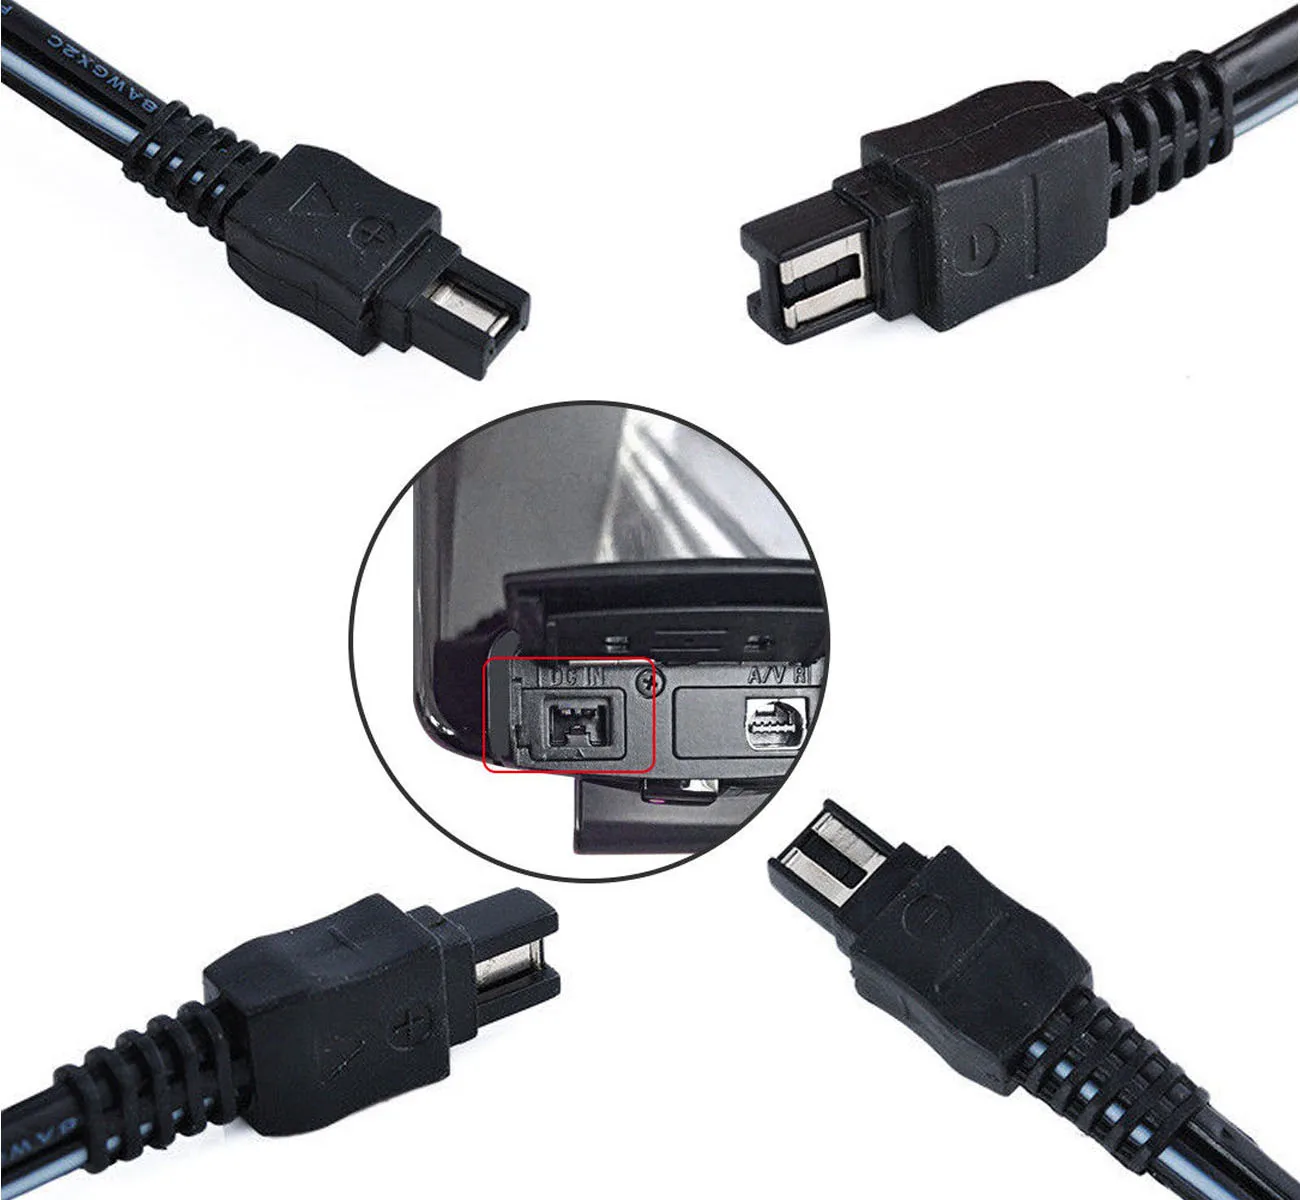 AC адаптер питания зарядное устройство для sony DCR-HC16E, DCR-HC17E, DCR-HC18E, DCR-HC19E, DCR-HC39E, DCR-HC94E, DCR-HC96E, Handycam видеокамеры